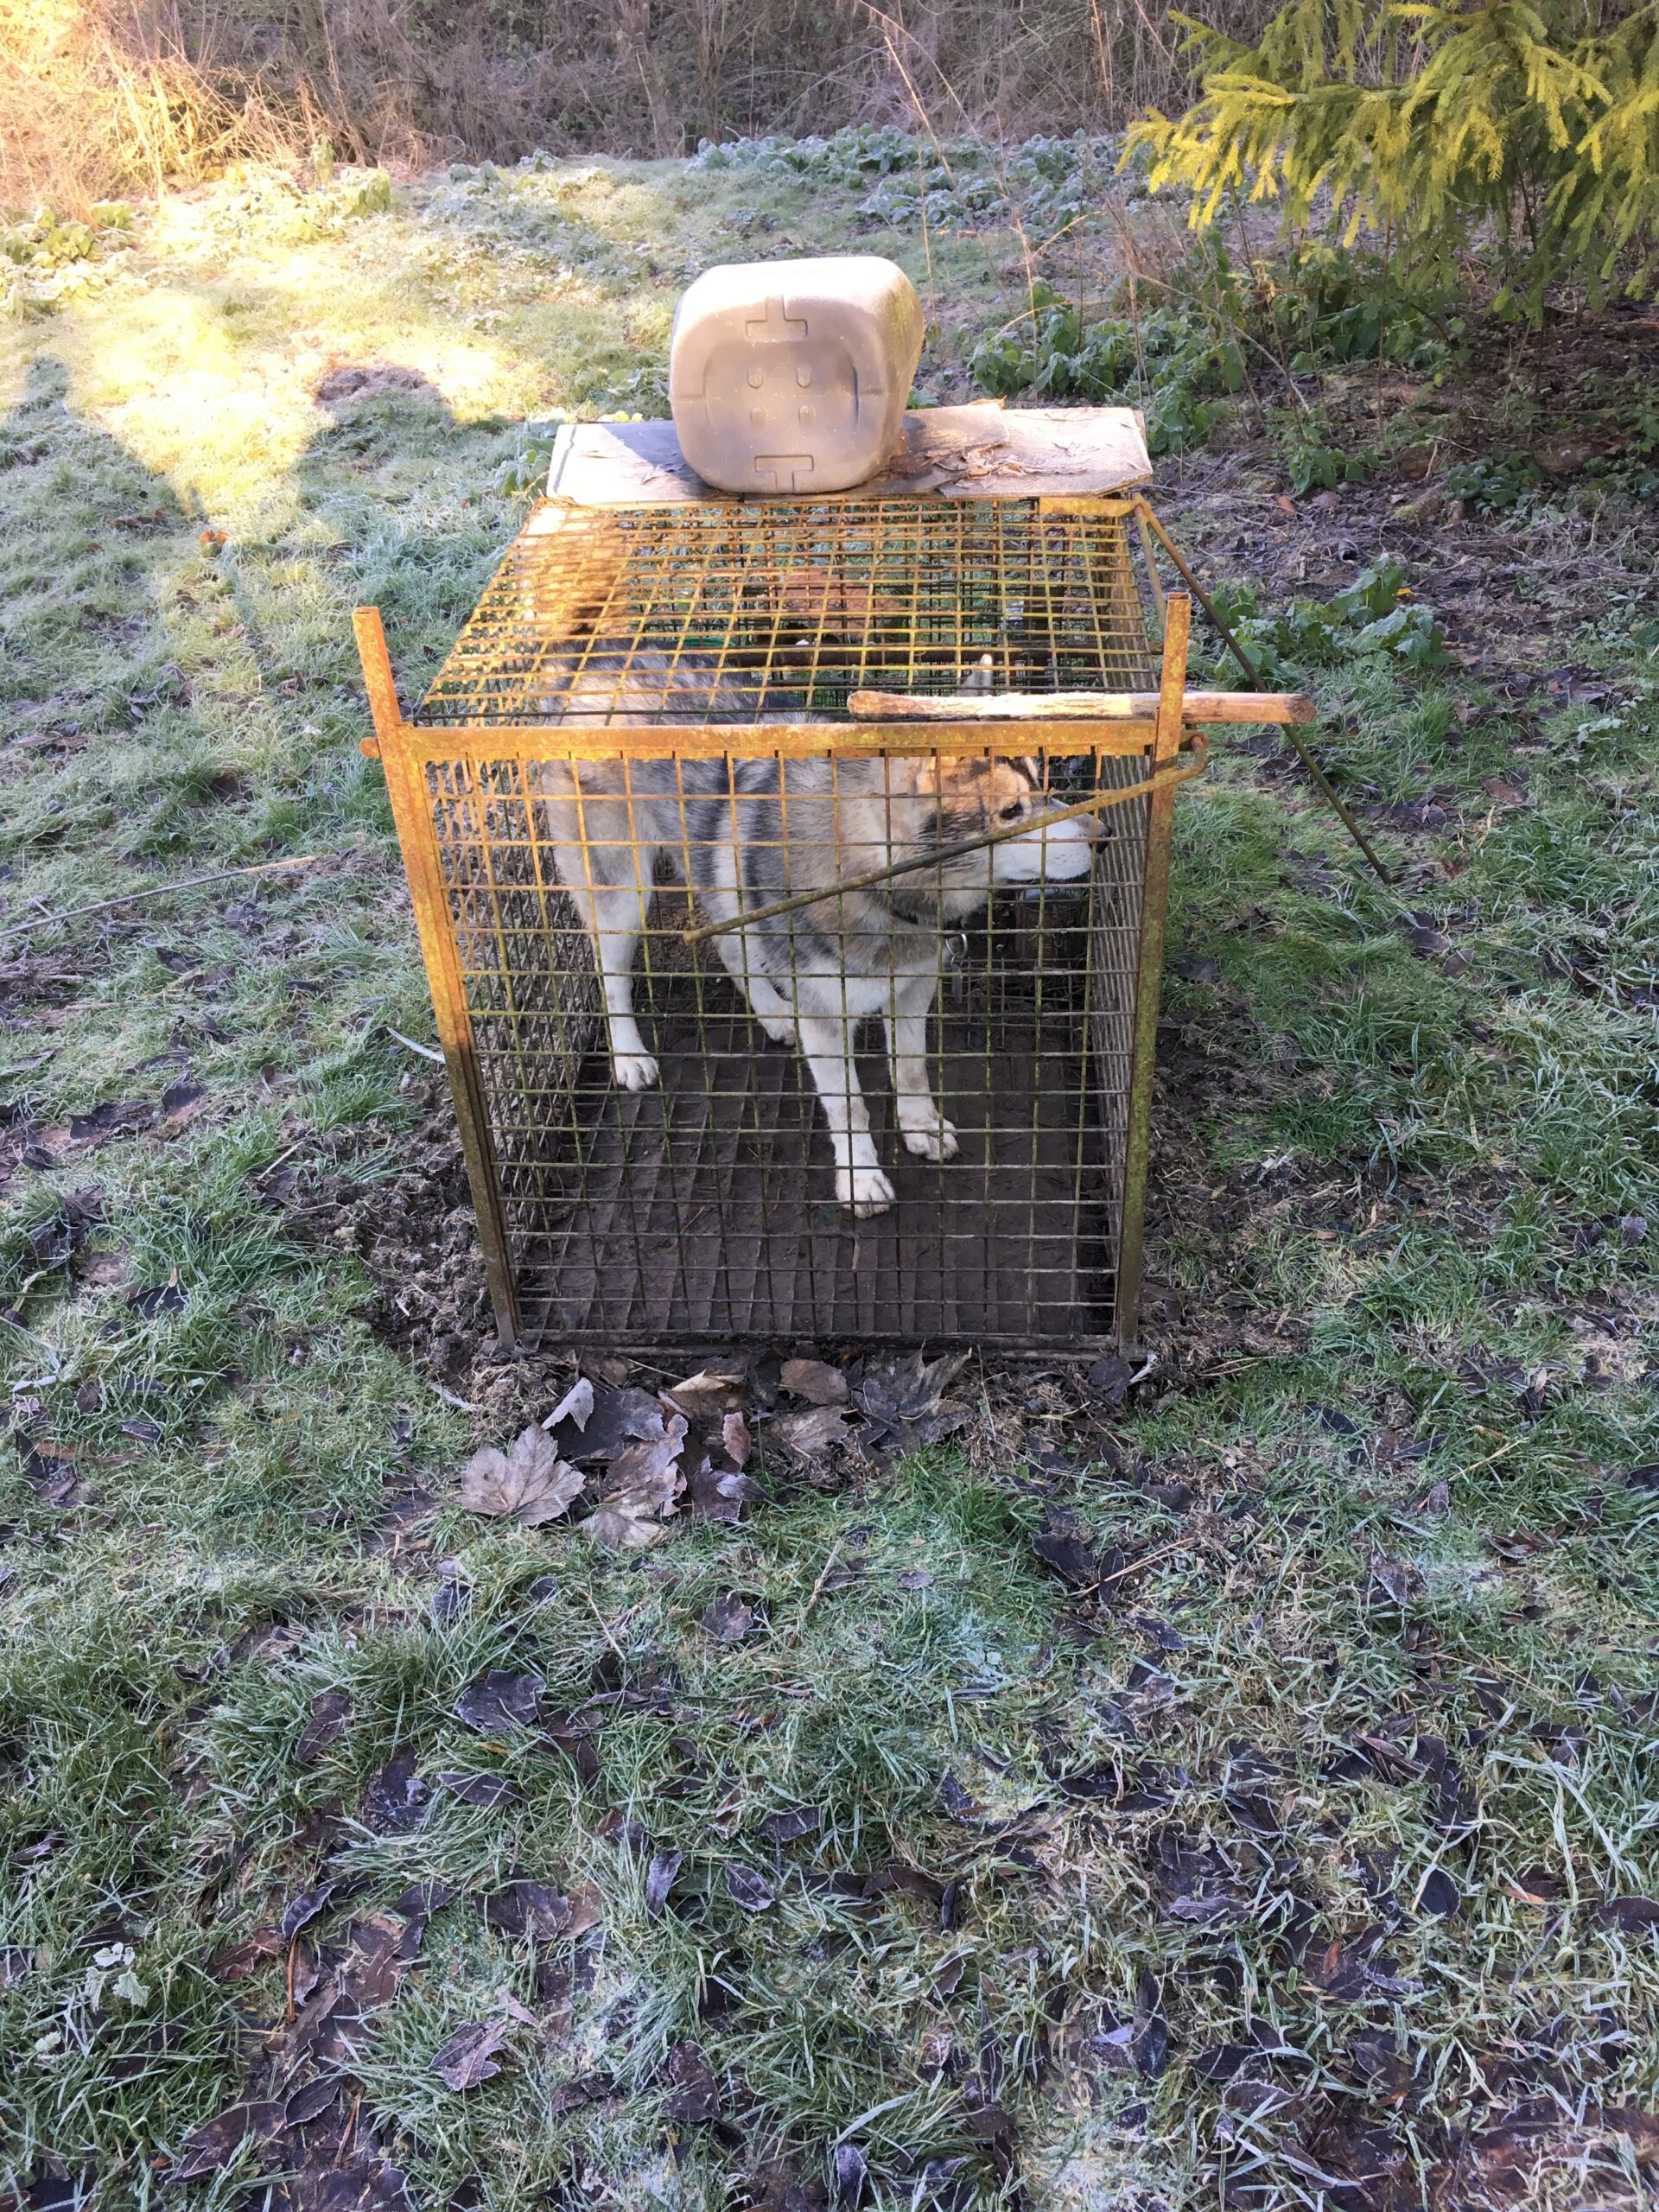  Le chien Tempo retrouvé enfermé dans un piège à renard après 48h